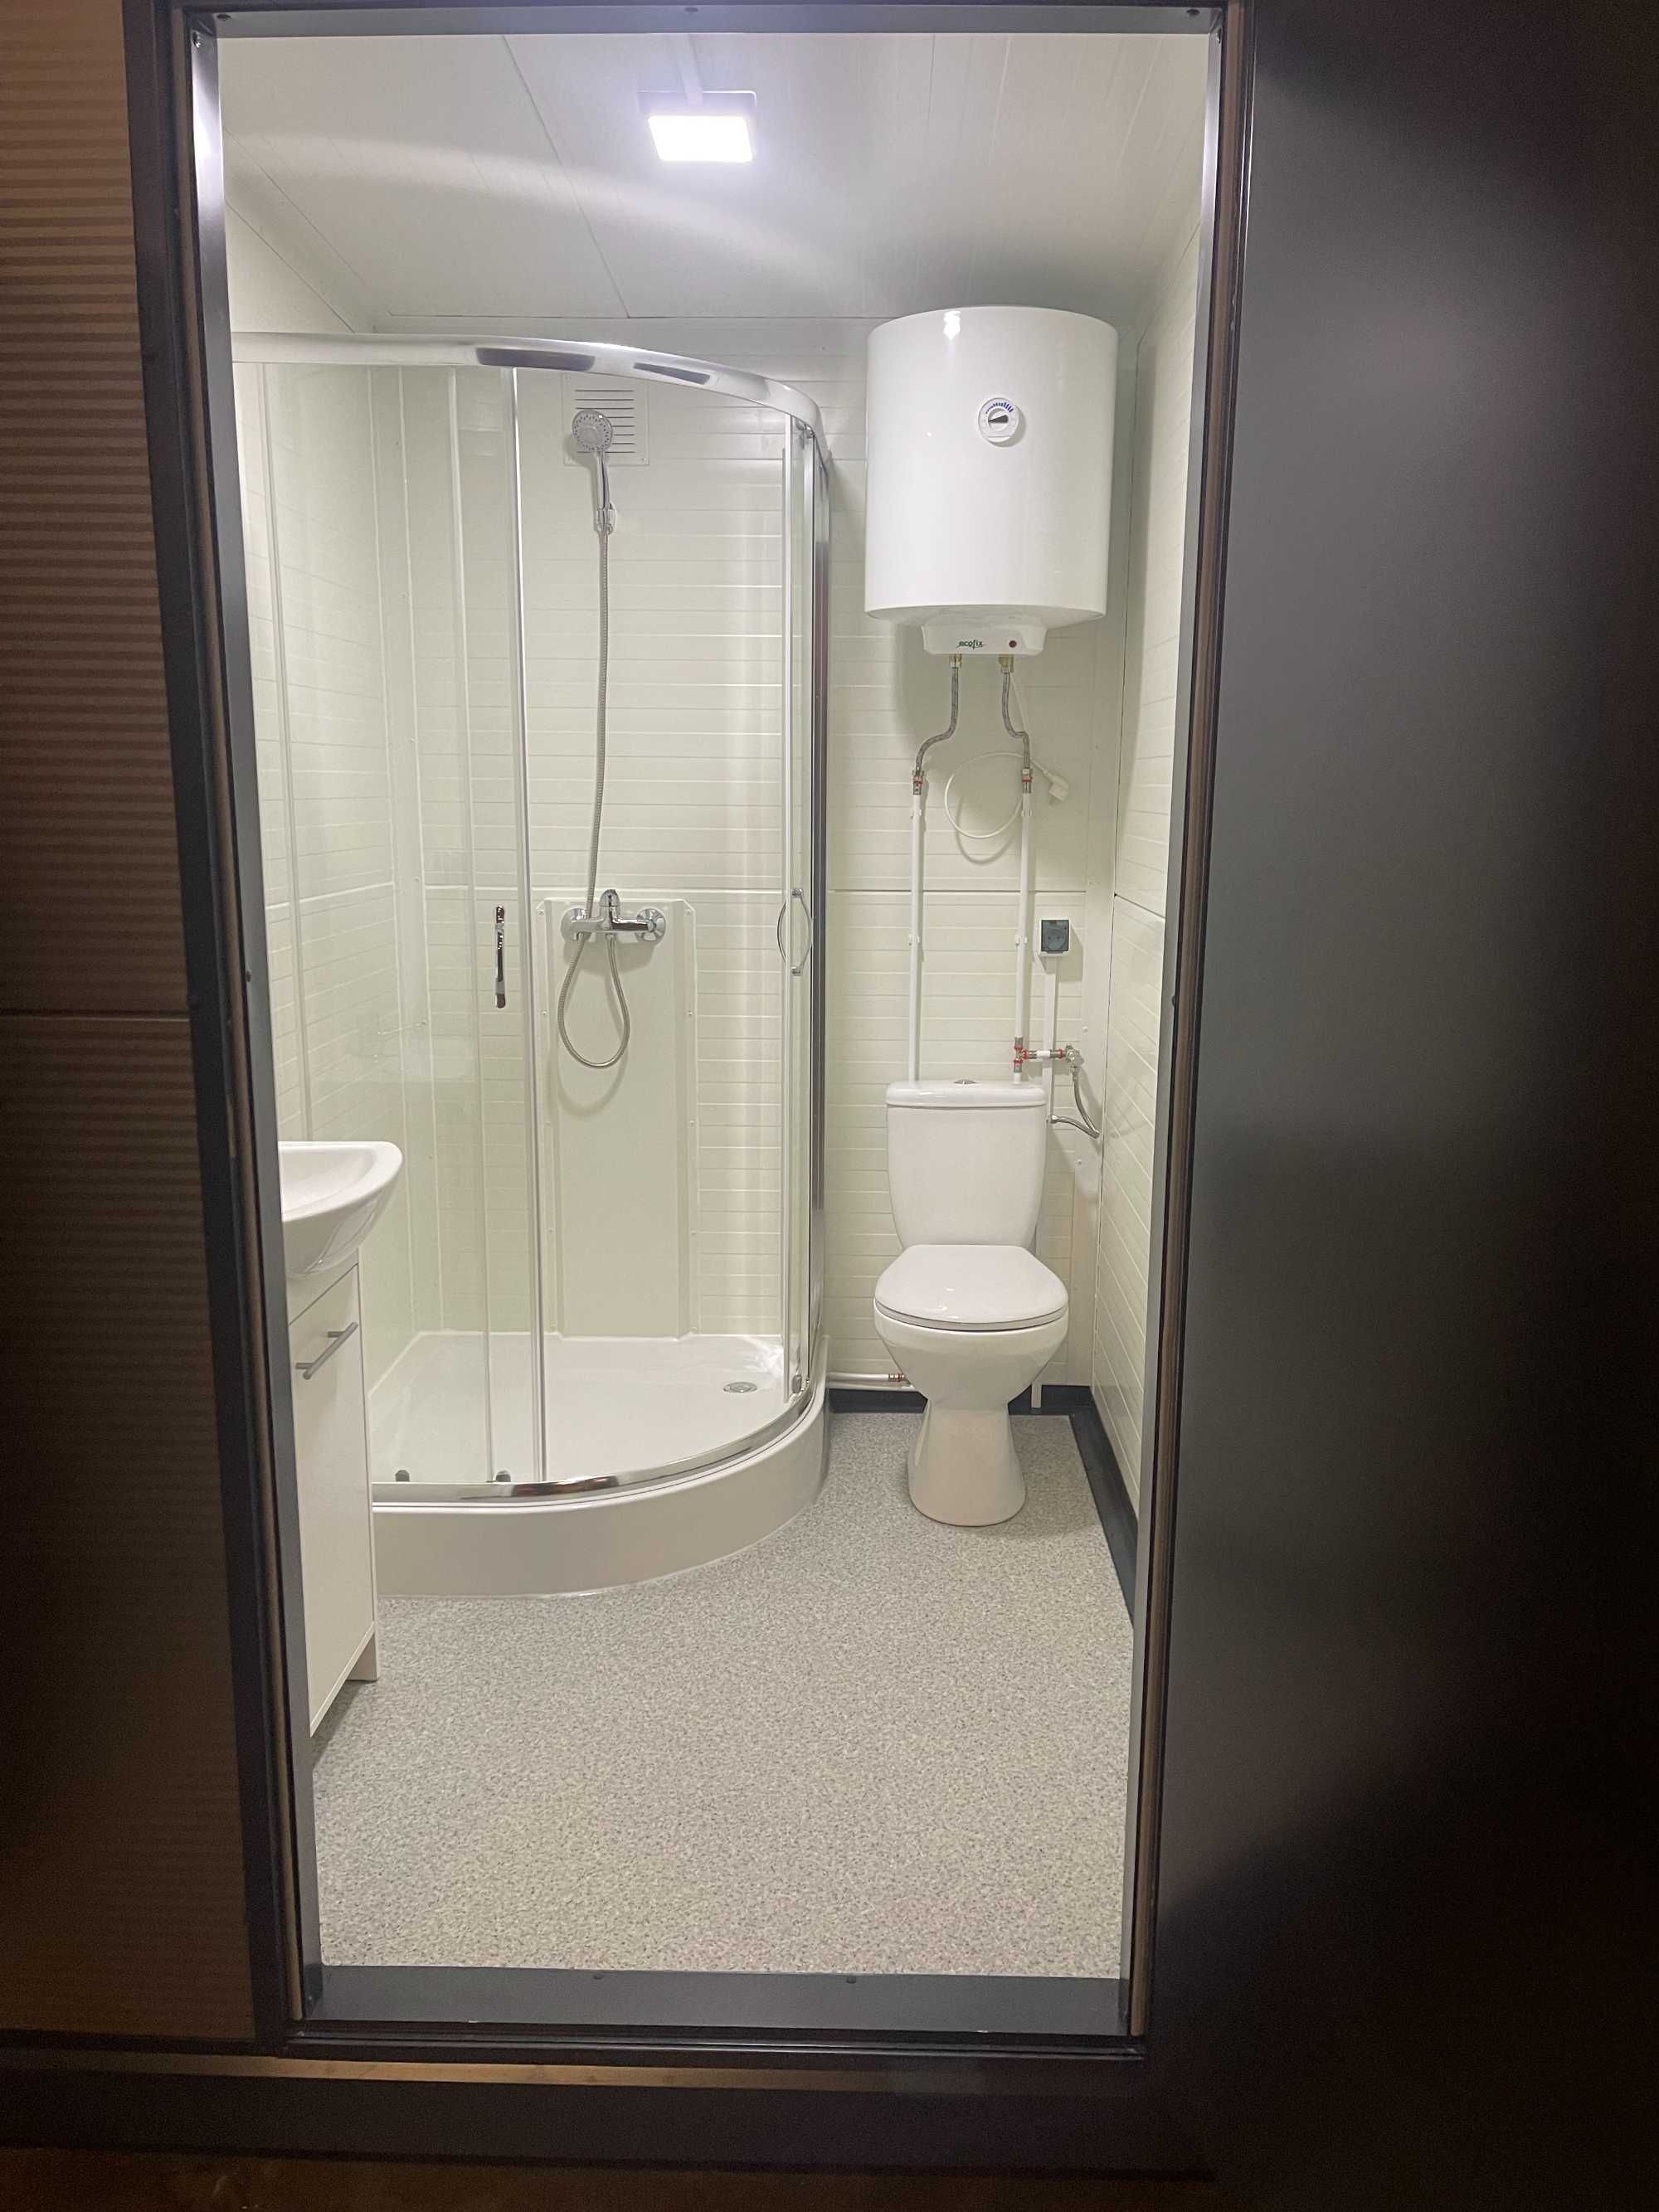 Pawilon sanitarny WC toaleta budka kontener natrysk prysznic camping